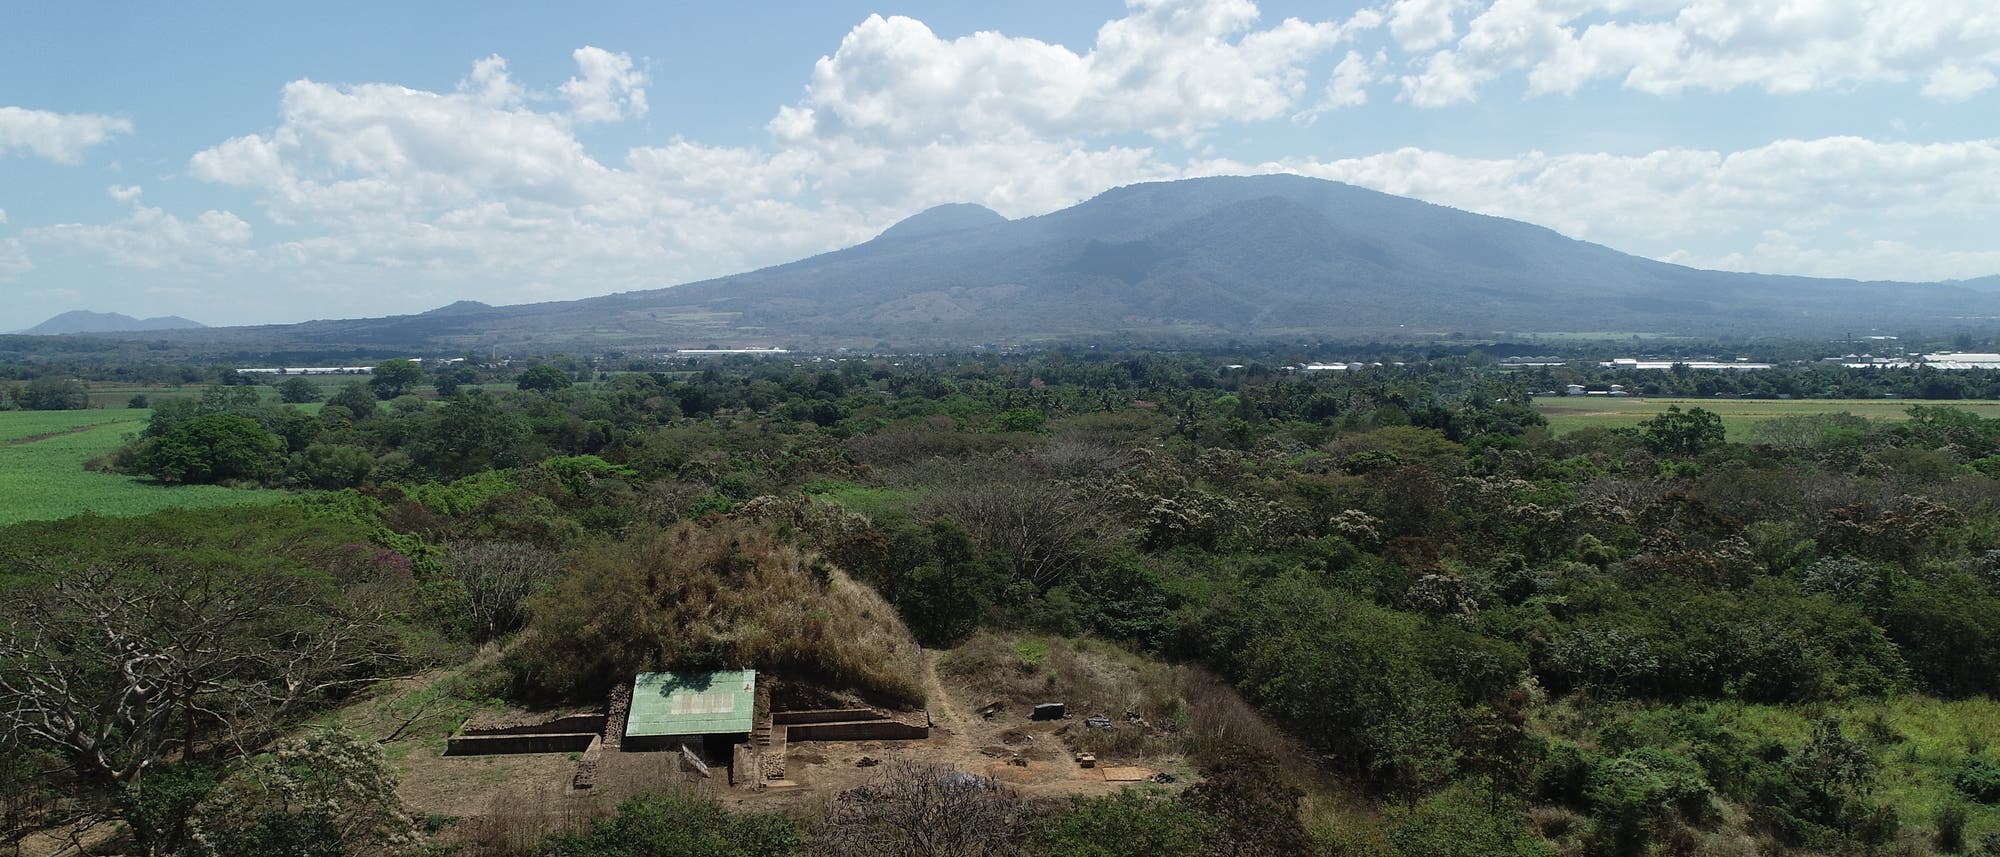 Die Pyramide oder Campana Struktur von San Andrés im Vordergrund, dahinter die Vulkanlandschaft von San Salvador.